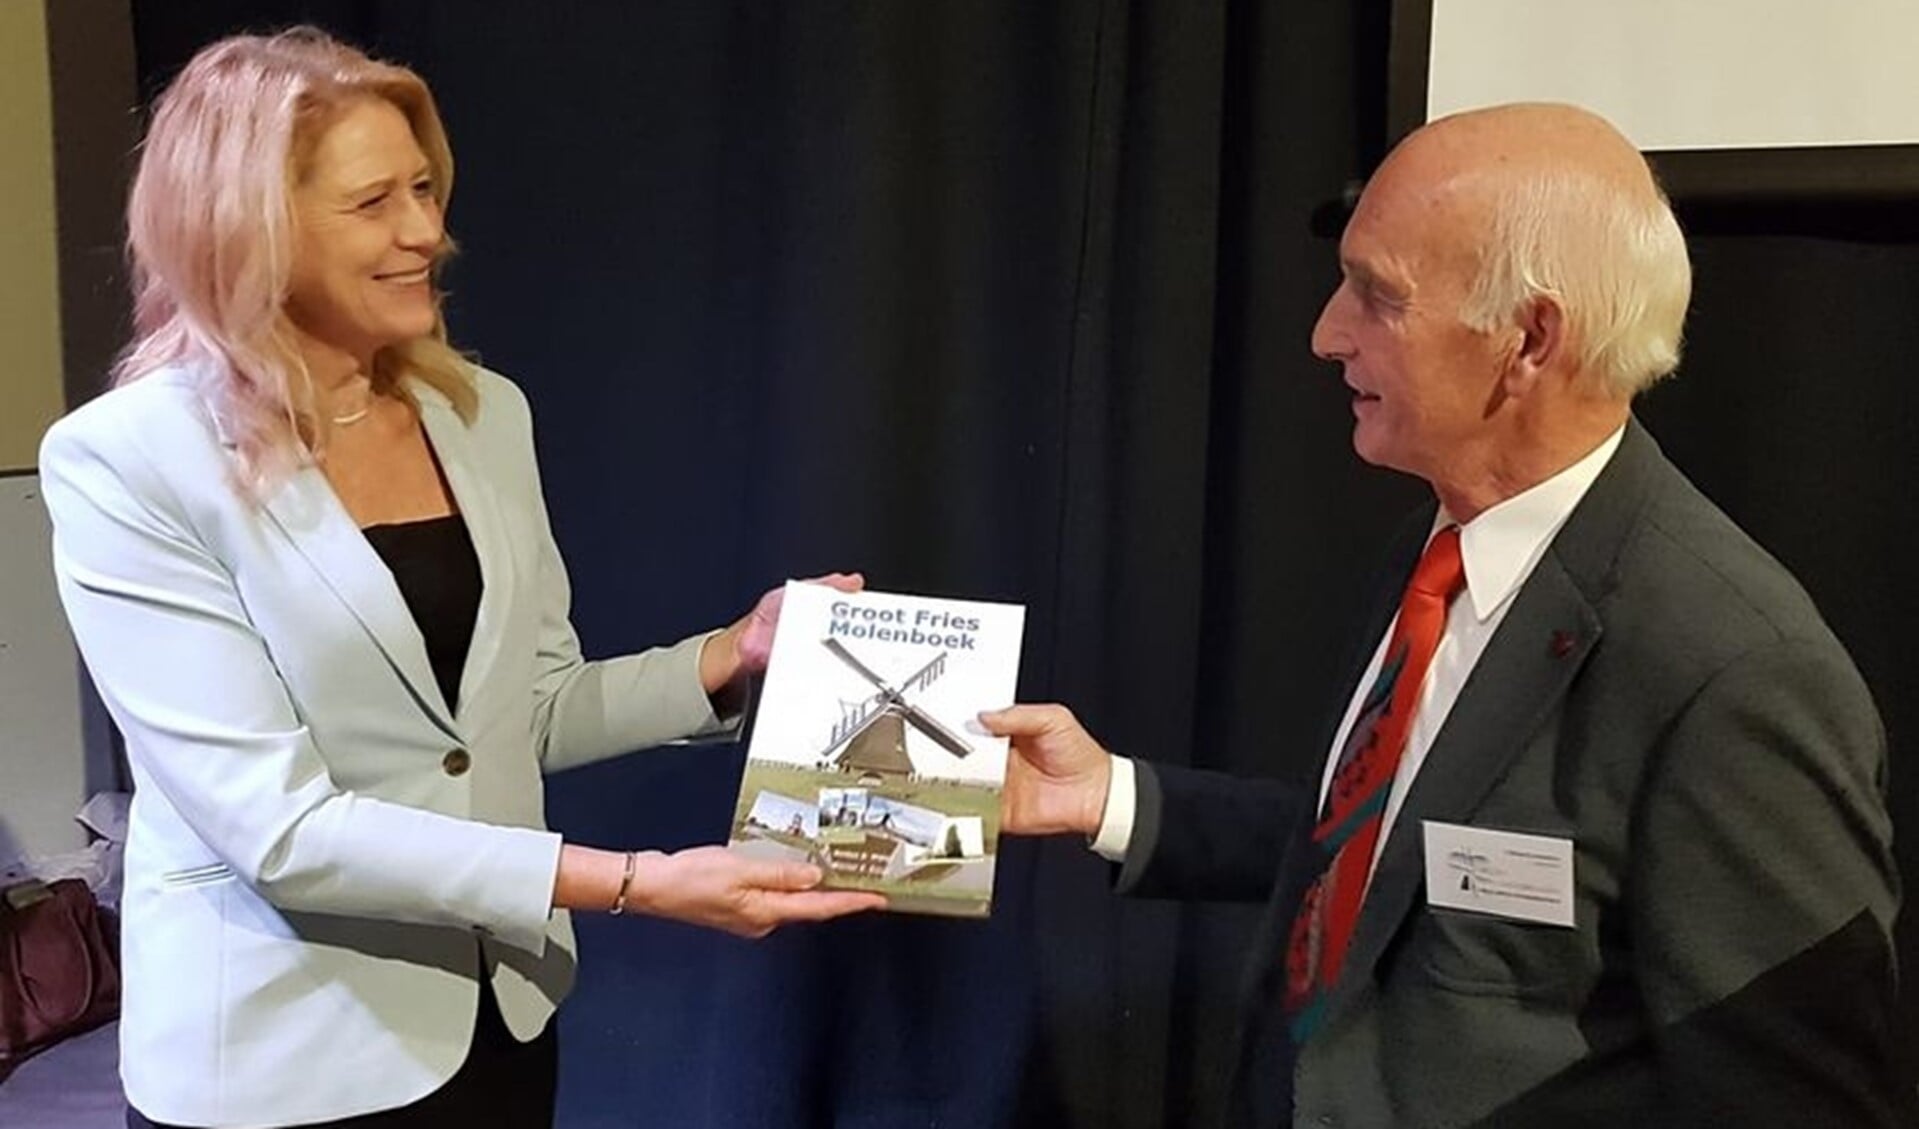 Wiepke Schukken, voorzitter van De Fryske Mole, reikt het eerste exemplaar van het Groot Fries Molenboek uit aan mevrouw Luzette Kroon, de dijkgraaf van Wetterskip Fryslân.